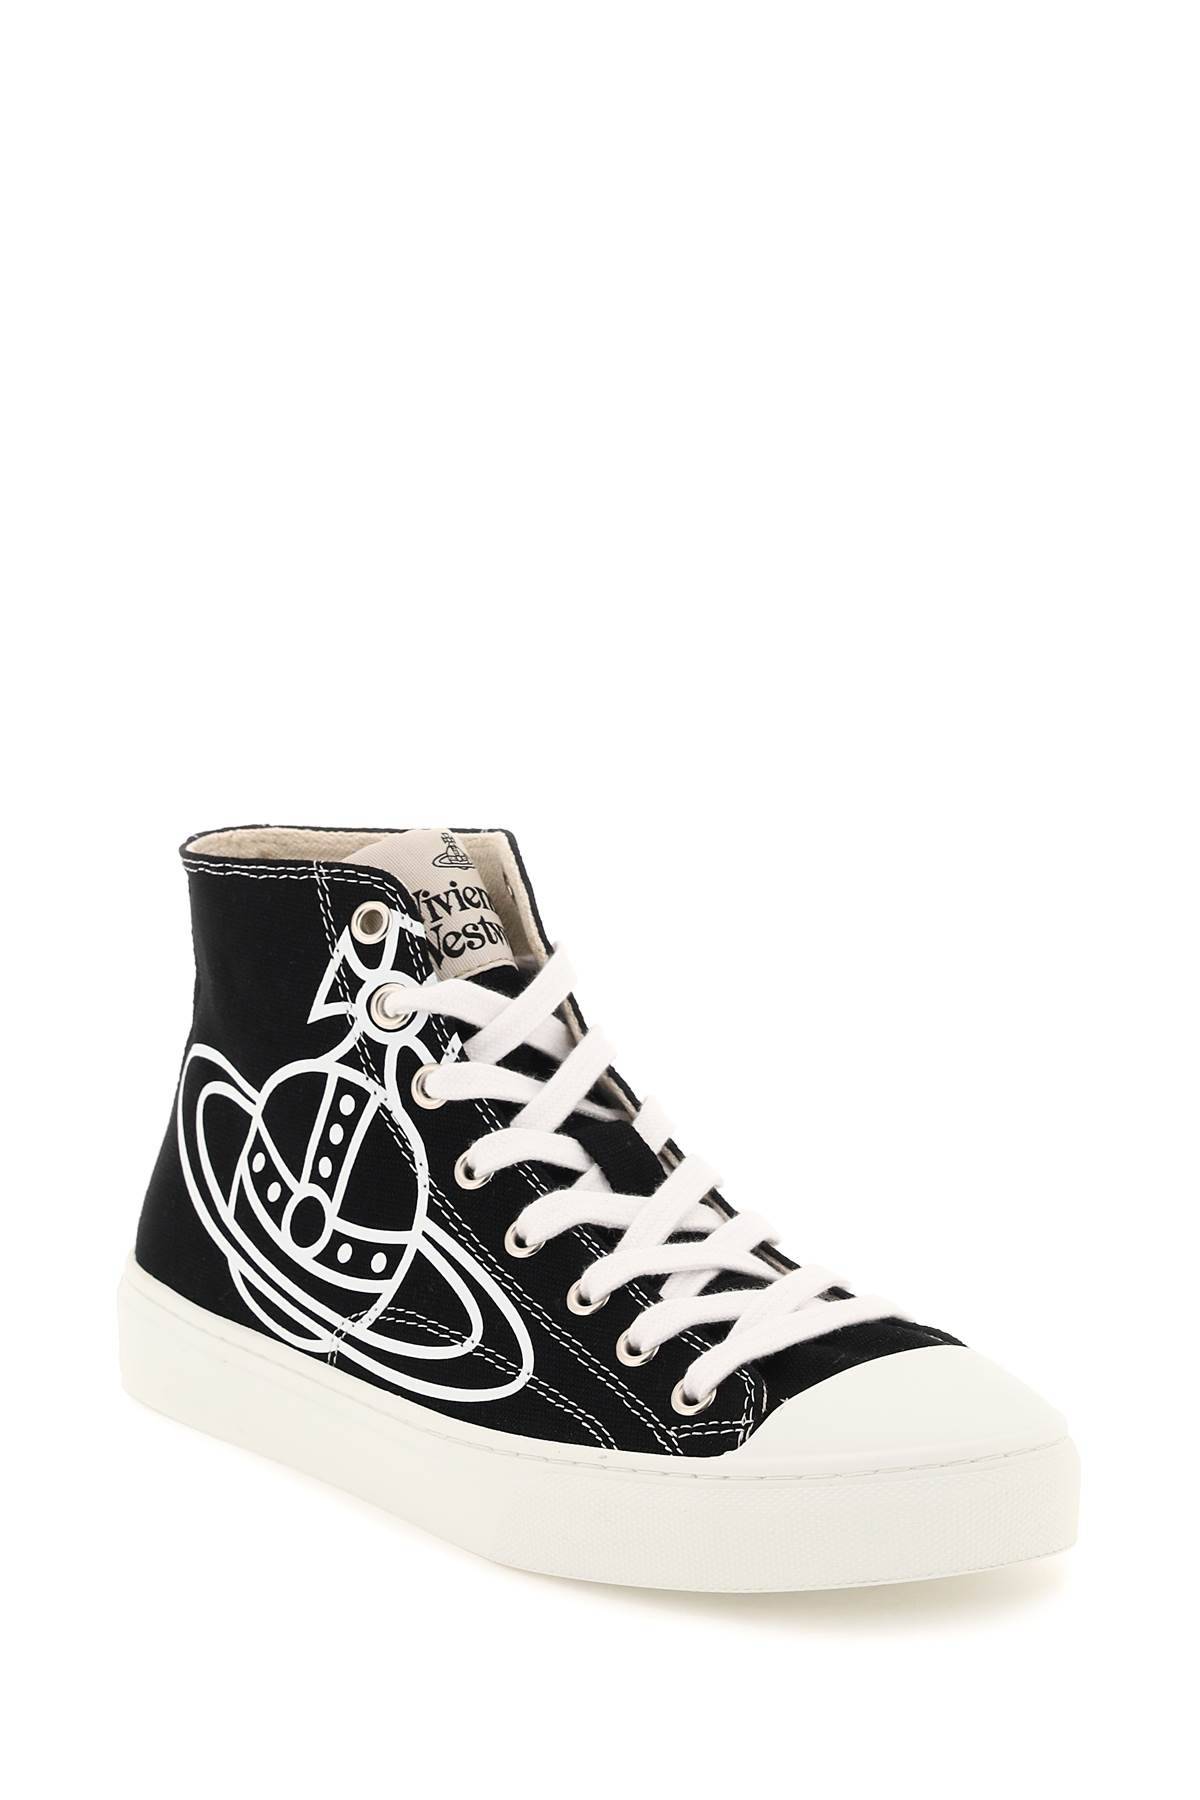 Shop Vivienne Westwood Plimsoll High Top Sneakers In Black